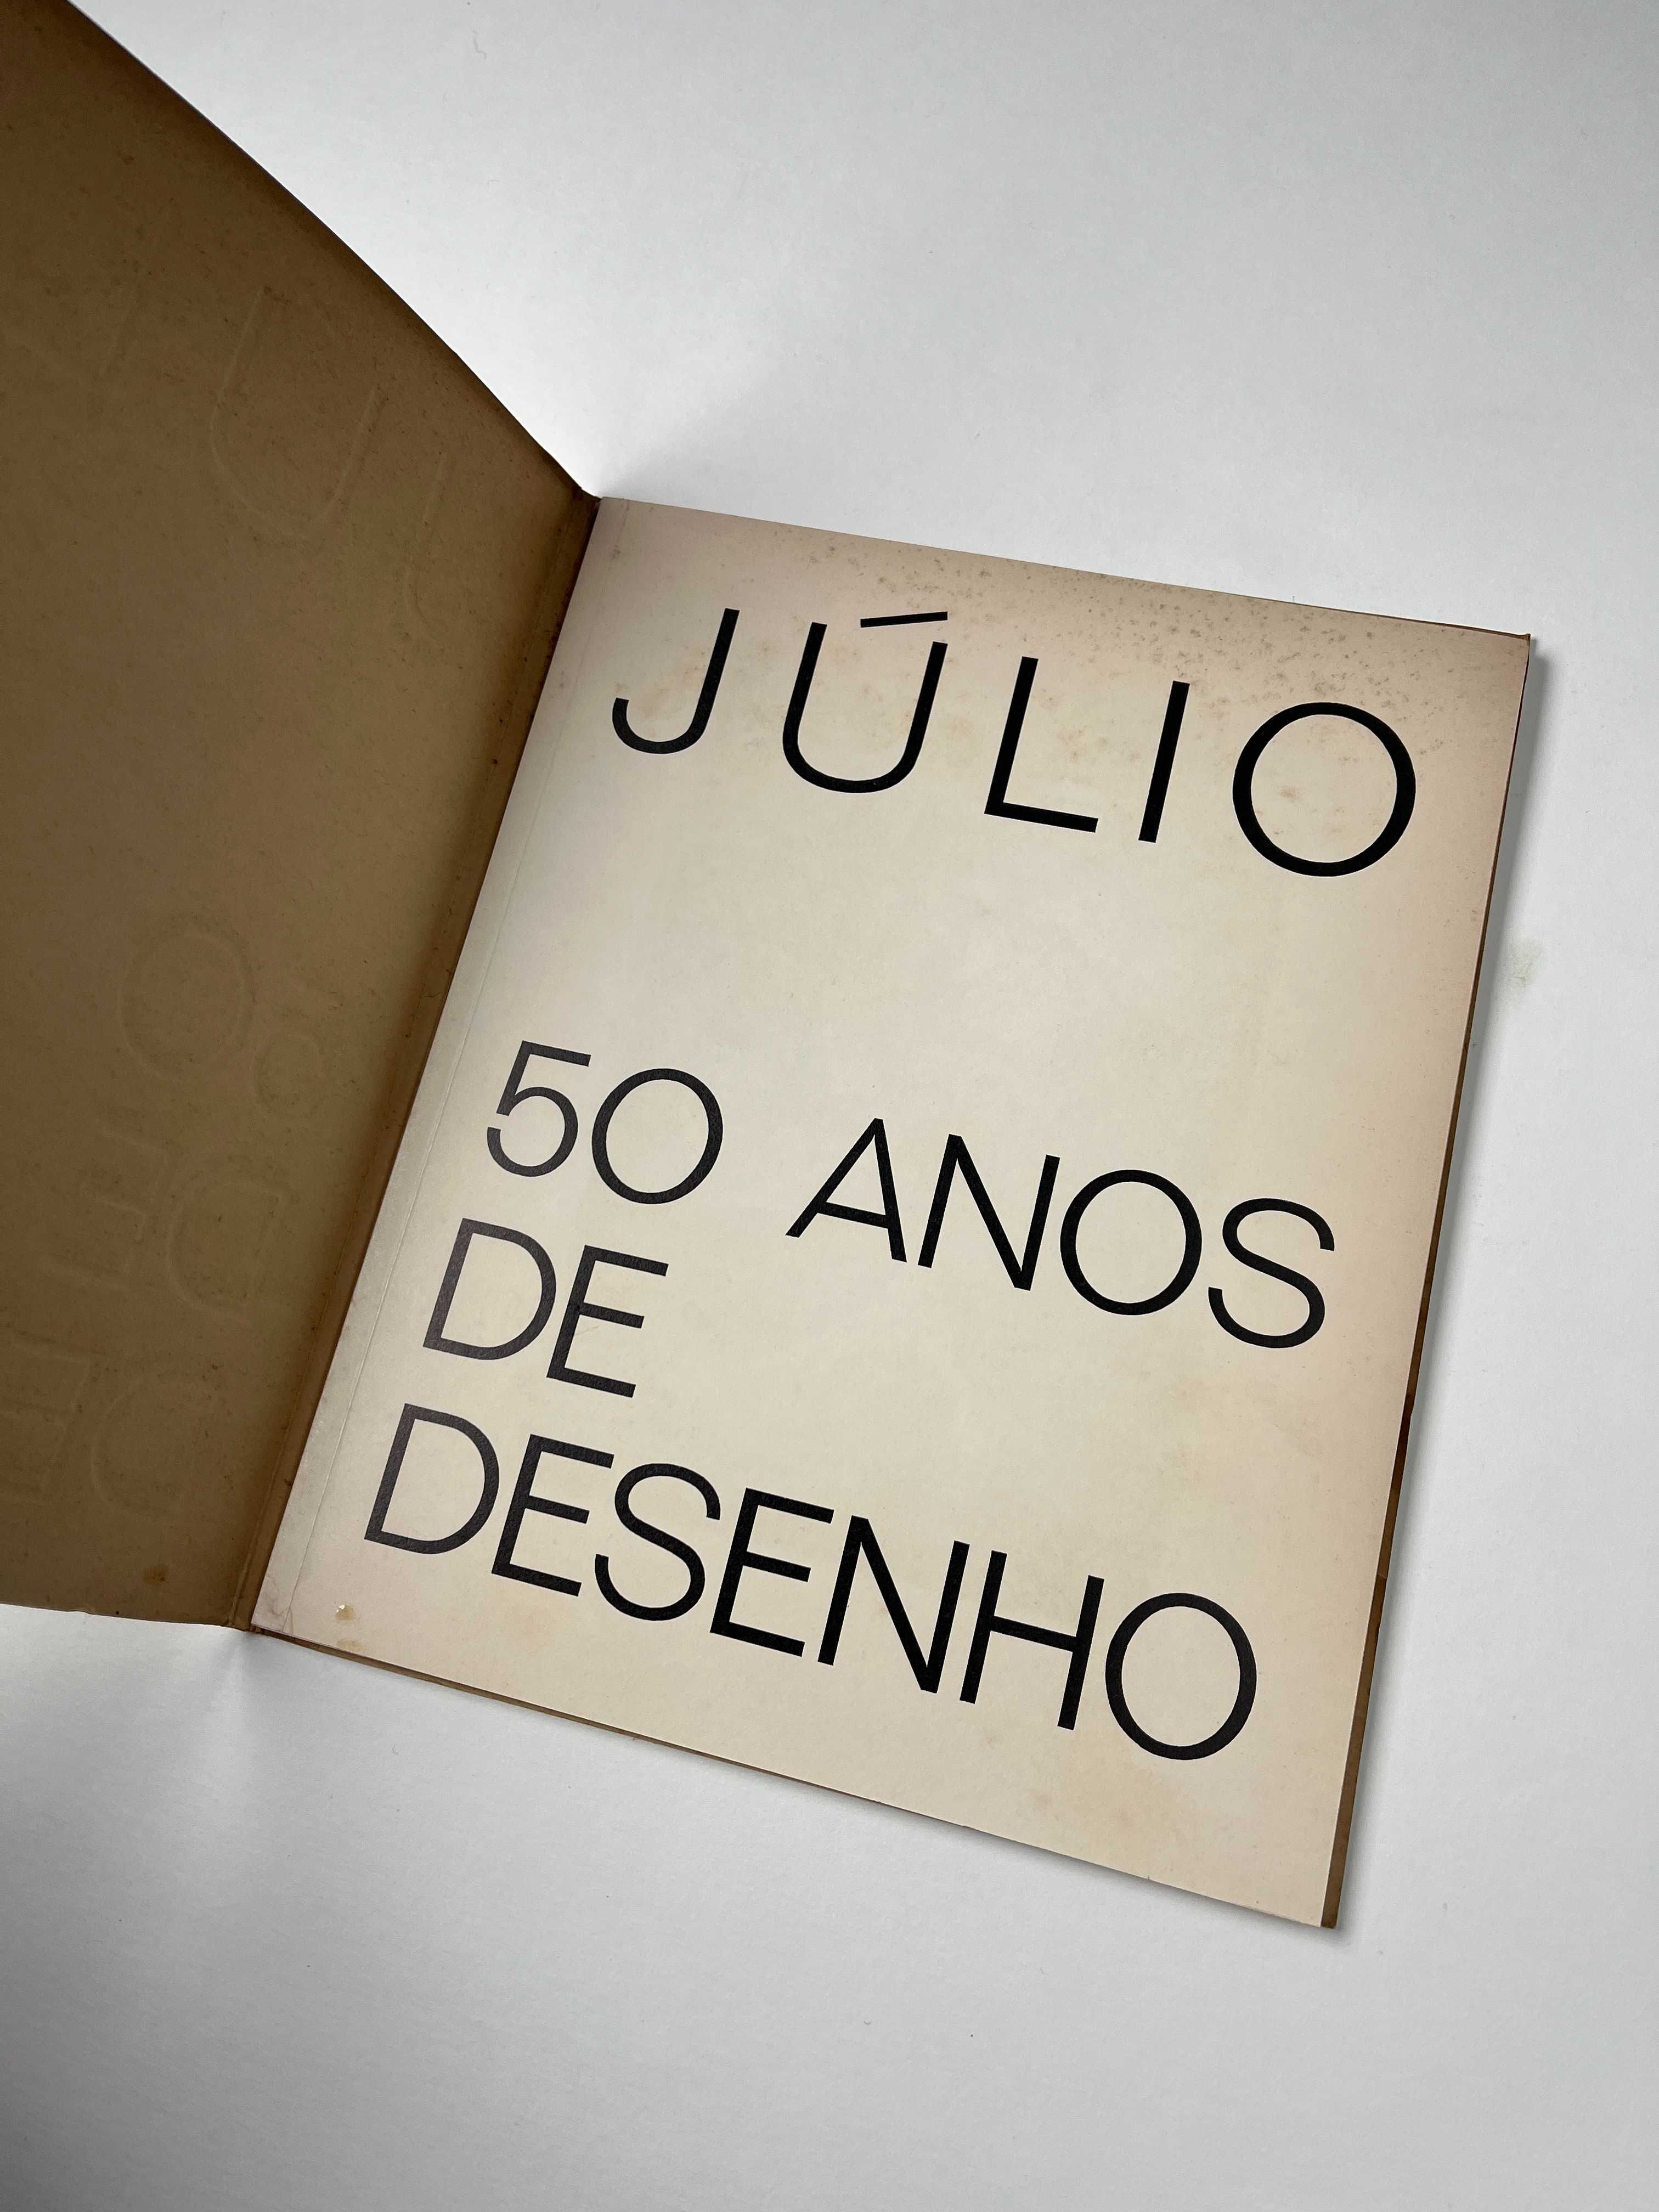 Catálogo Júlio - 50 anos de desenho Galeria de São Mamede 1973